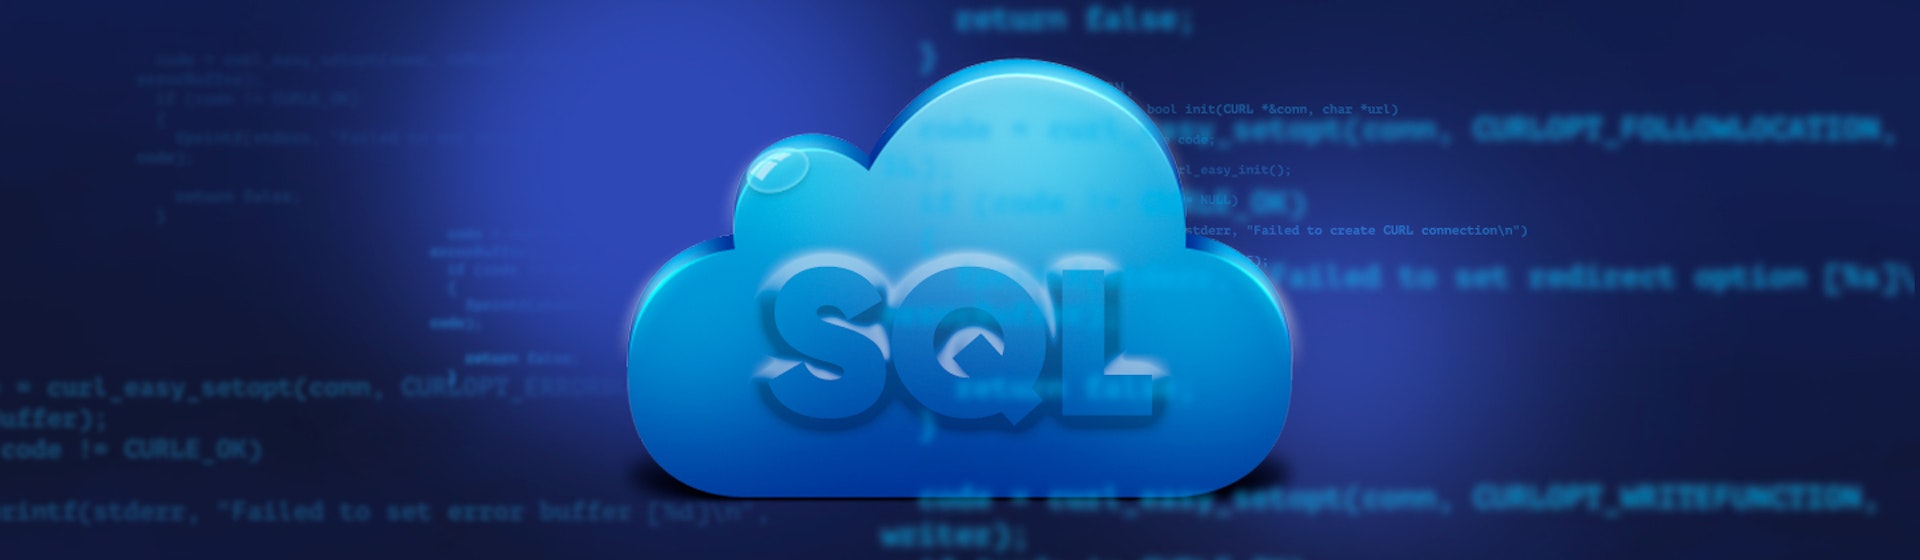 ¿Qué es y para qué sirve SQL? Consejos para usarlo en el análisis de datos